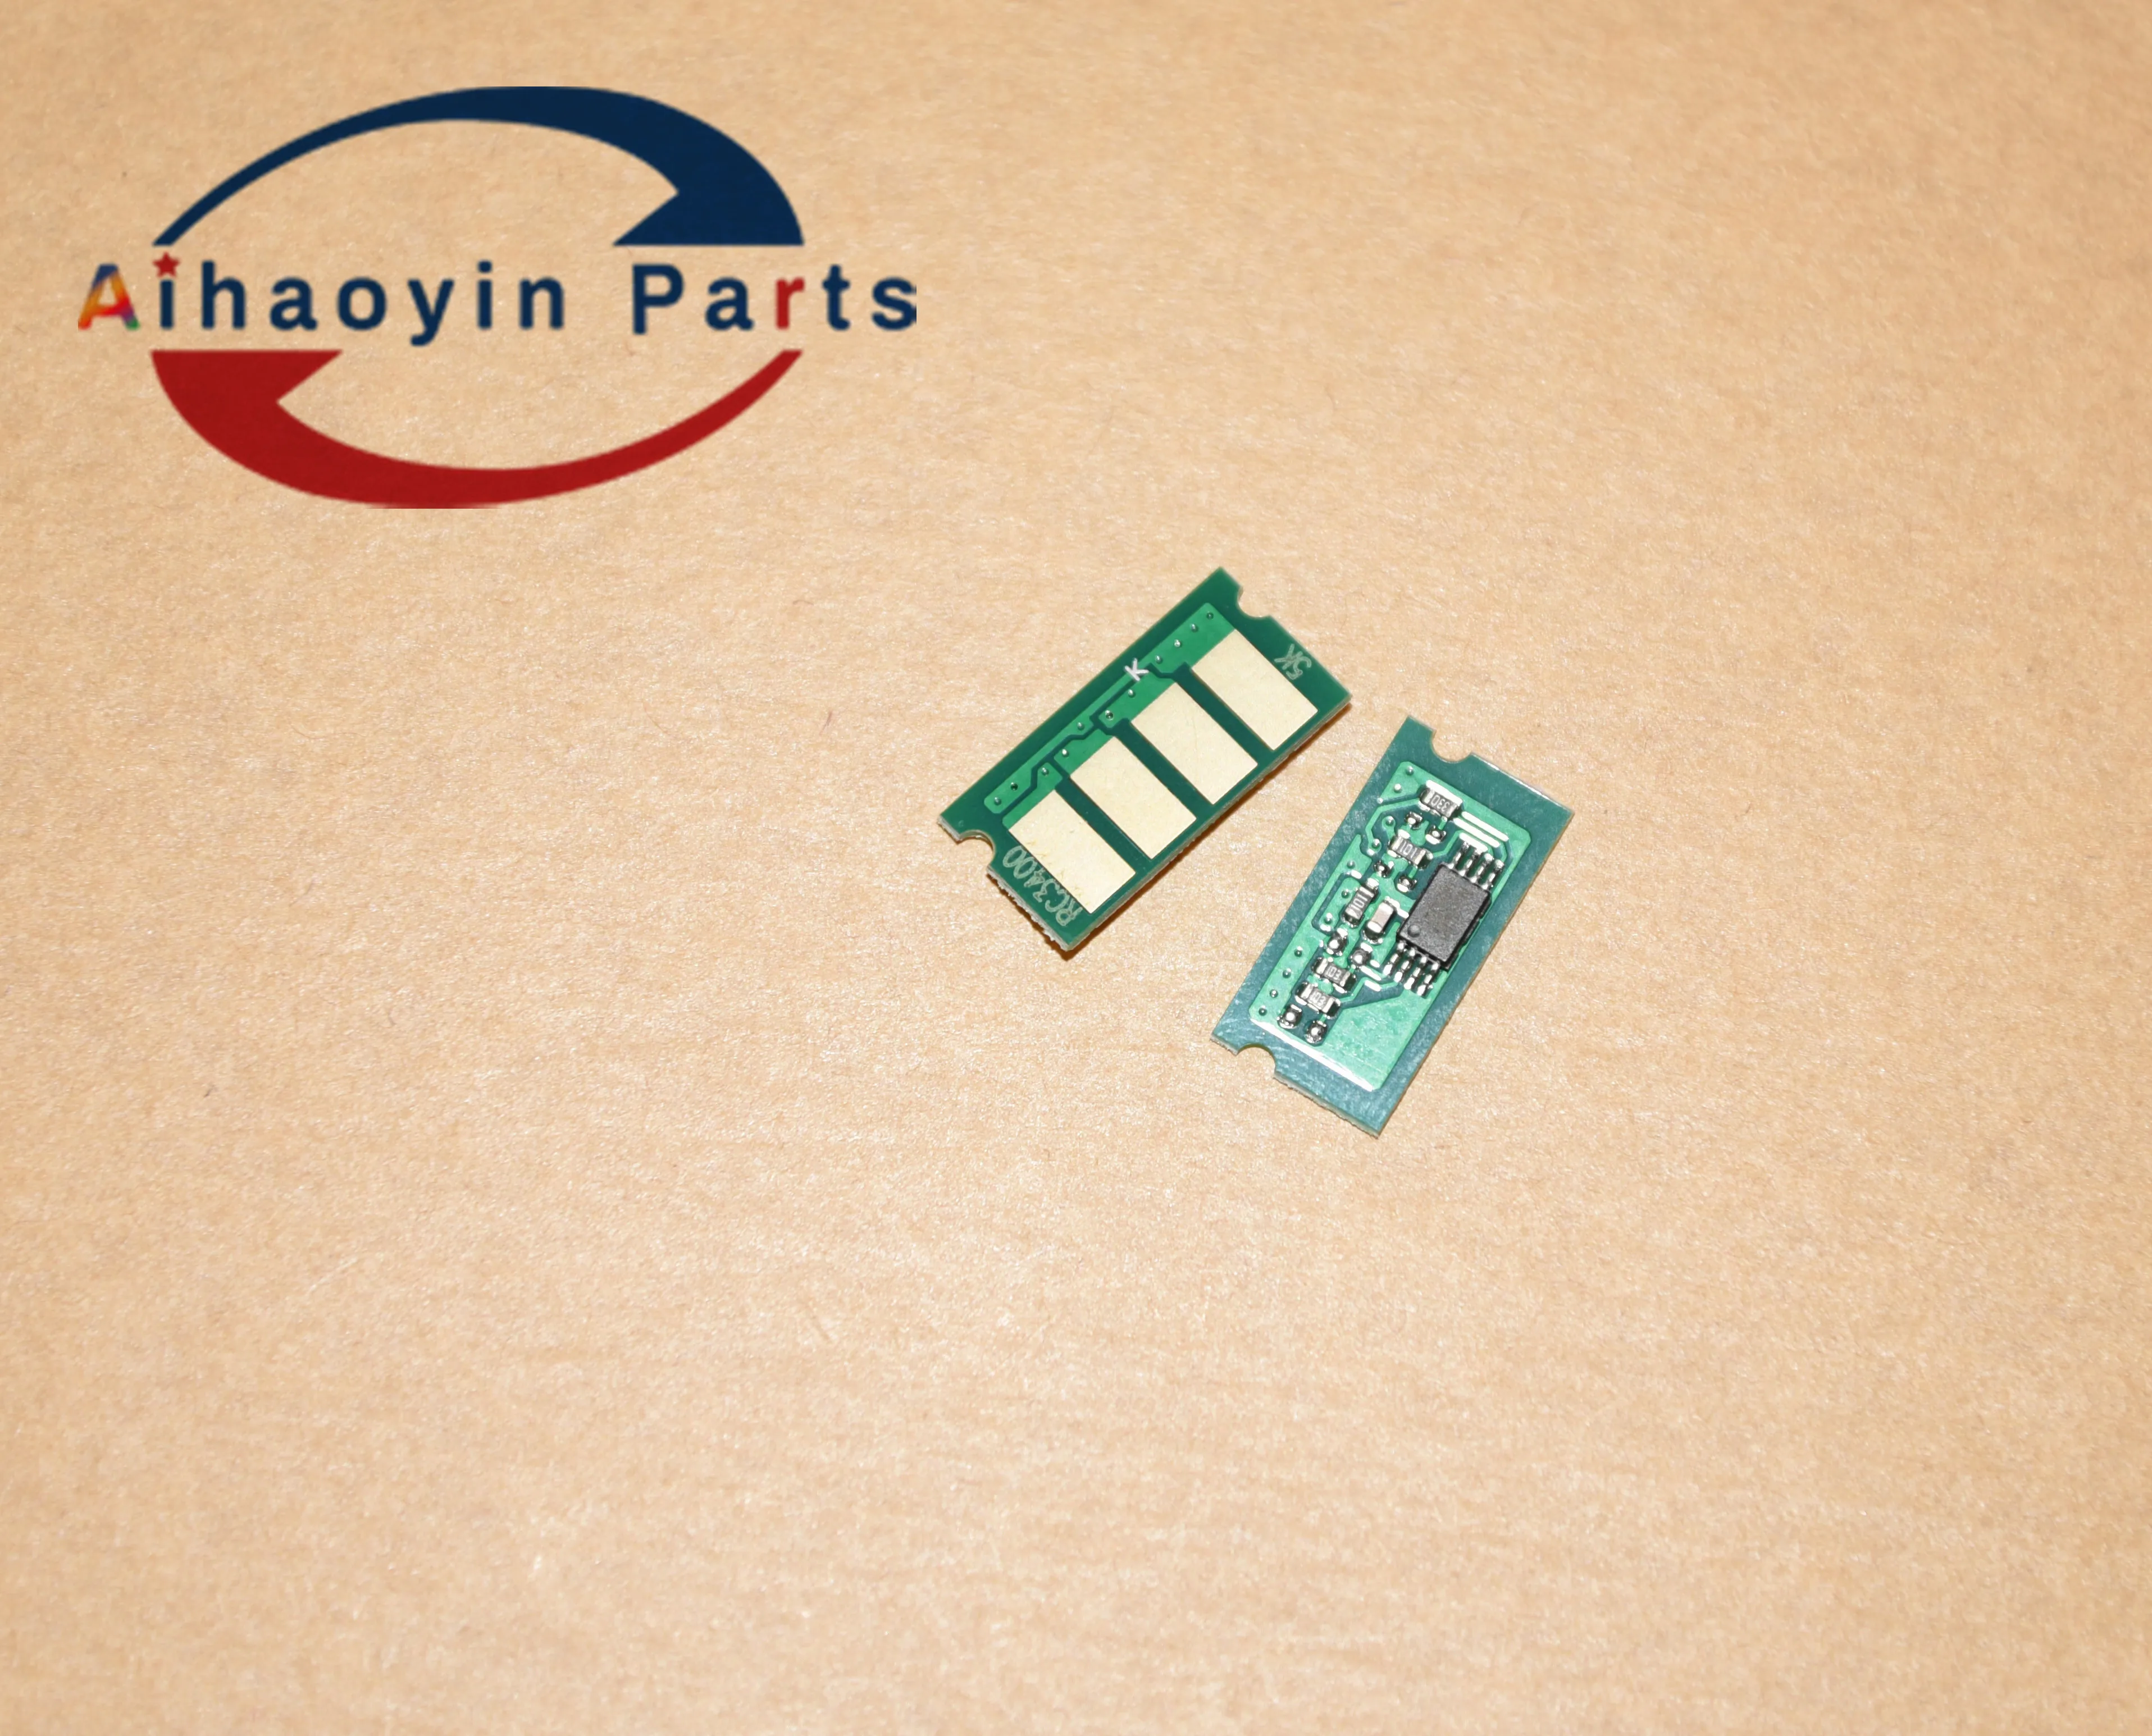 

20PCS 5K SP 3400HC Toner Cartridge Chip For Ricoh Aficio SP 3400 sp3400 3410 SP3410 sp3510 3510 sp3500 3510SF 3500 3510 reset